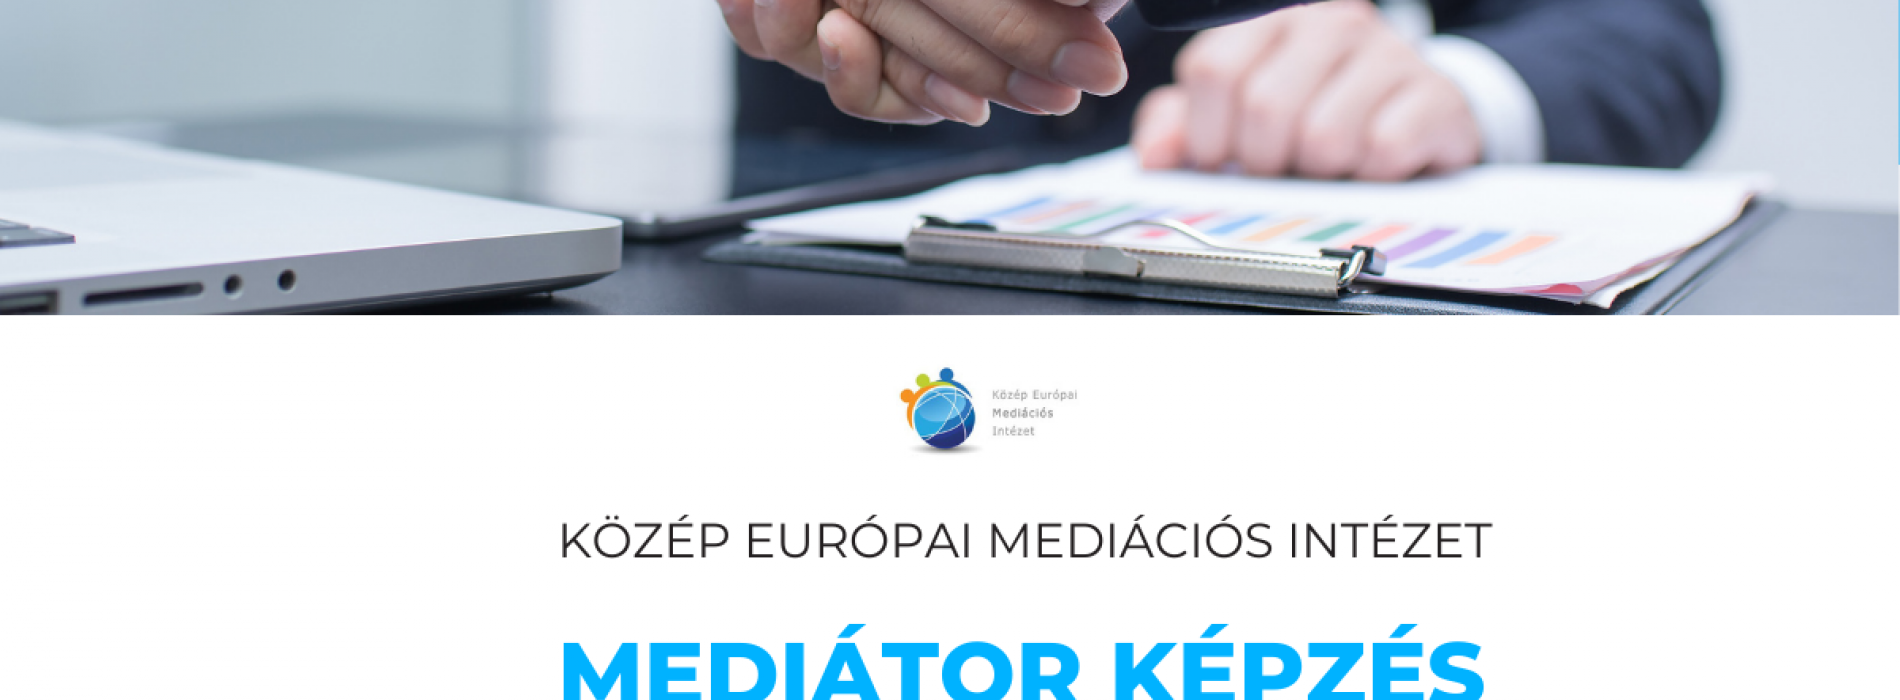 KEMI mediátor képzés - 2022. májusi csoport